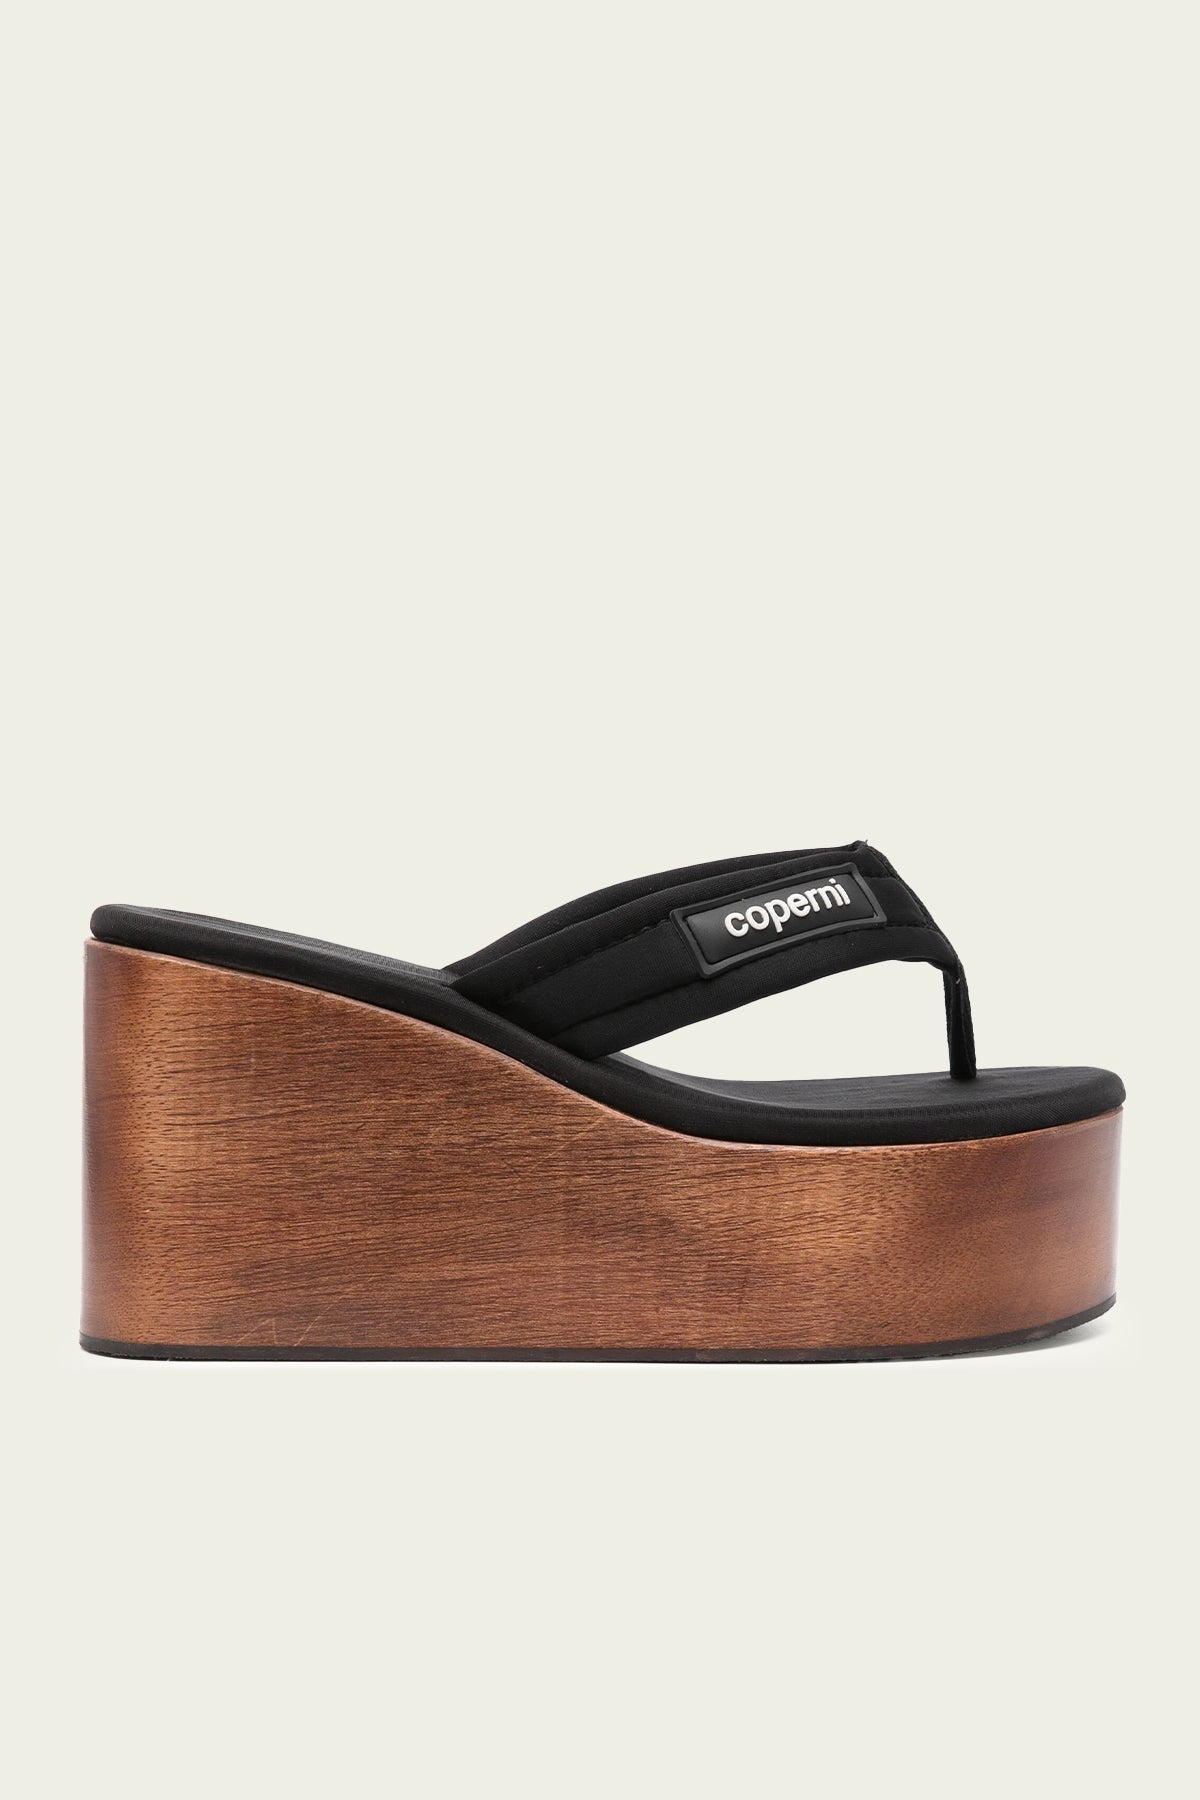 Wooden Branded Wedge Sandal in Black Brown - shop-olivia.com